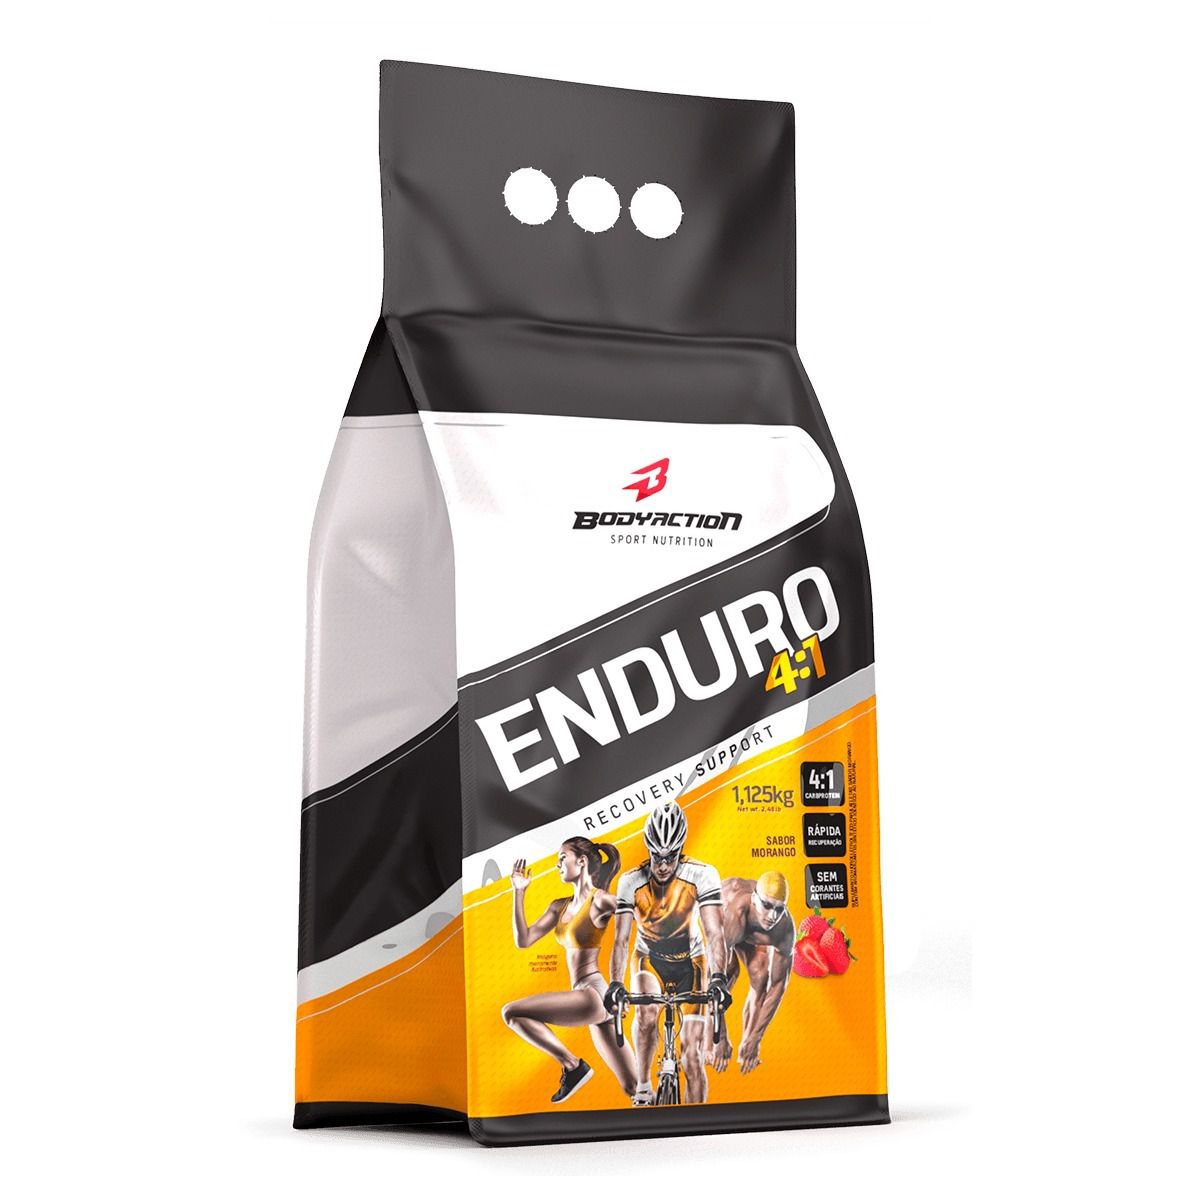 Enduro 4:1 1,125kg Body Action